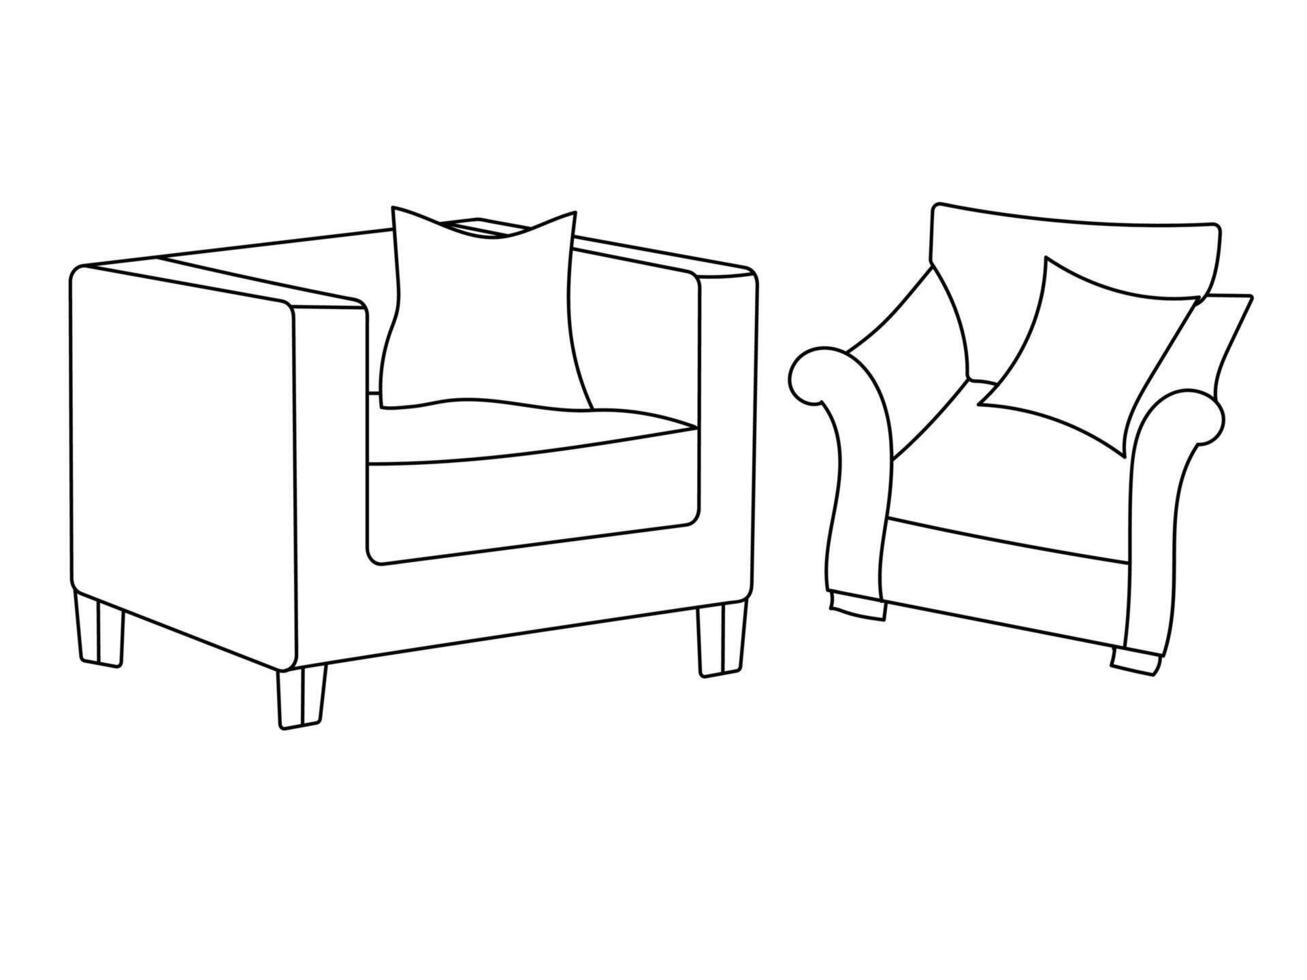 modern möbel fåtölj Hem, kontinuerlig linje teckning verkställande kontor stol begrepp, soffa stol vektor illustration